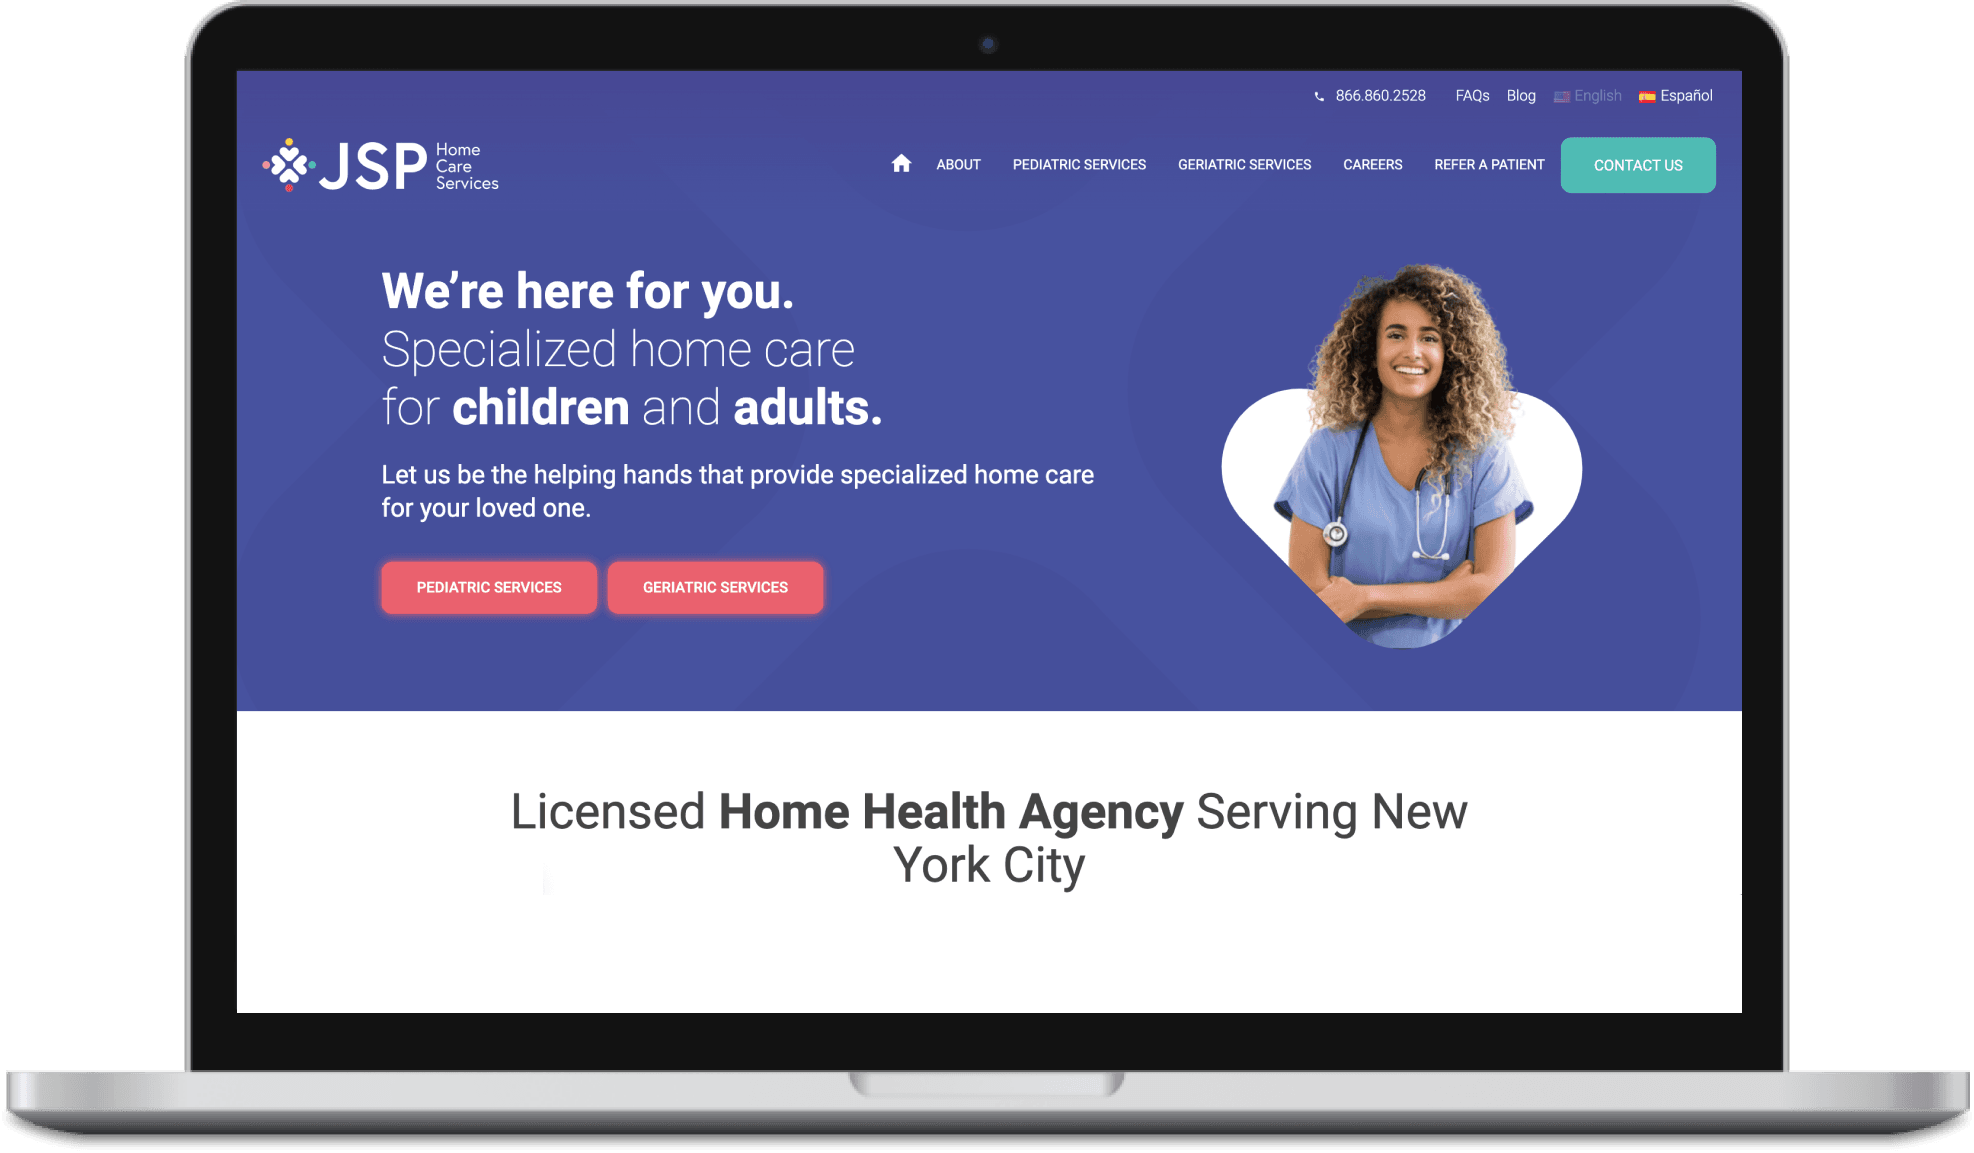 Healthcare website design & marketing - JSP Home Care Services